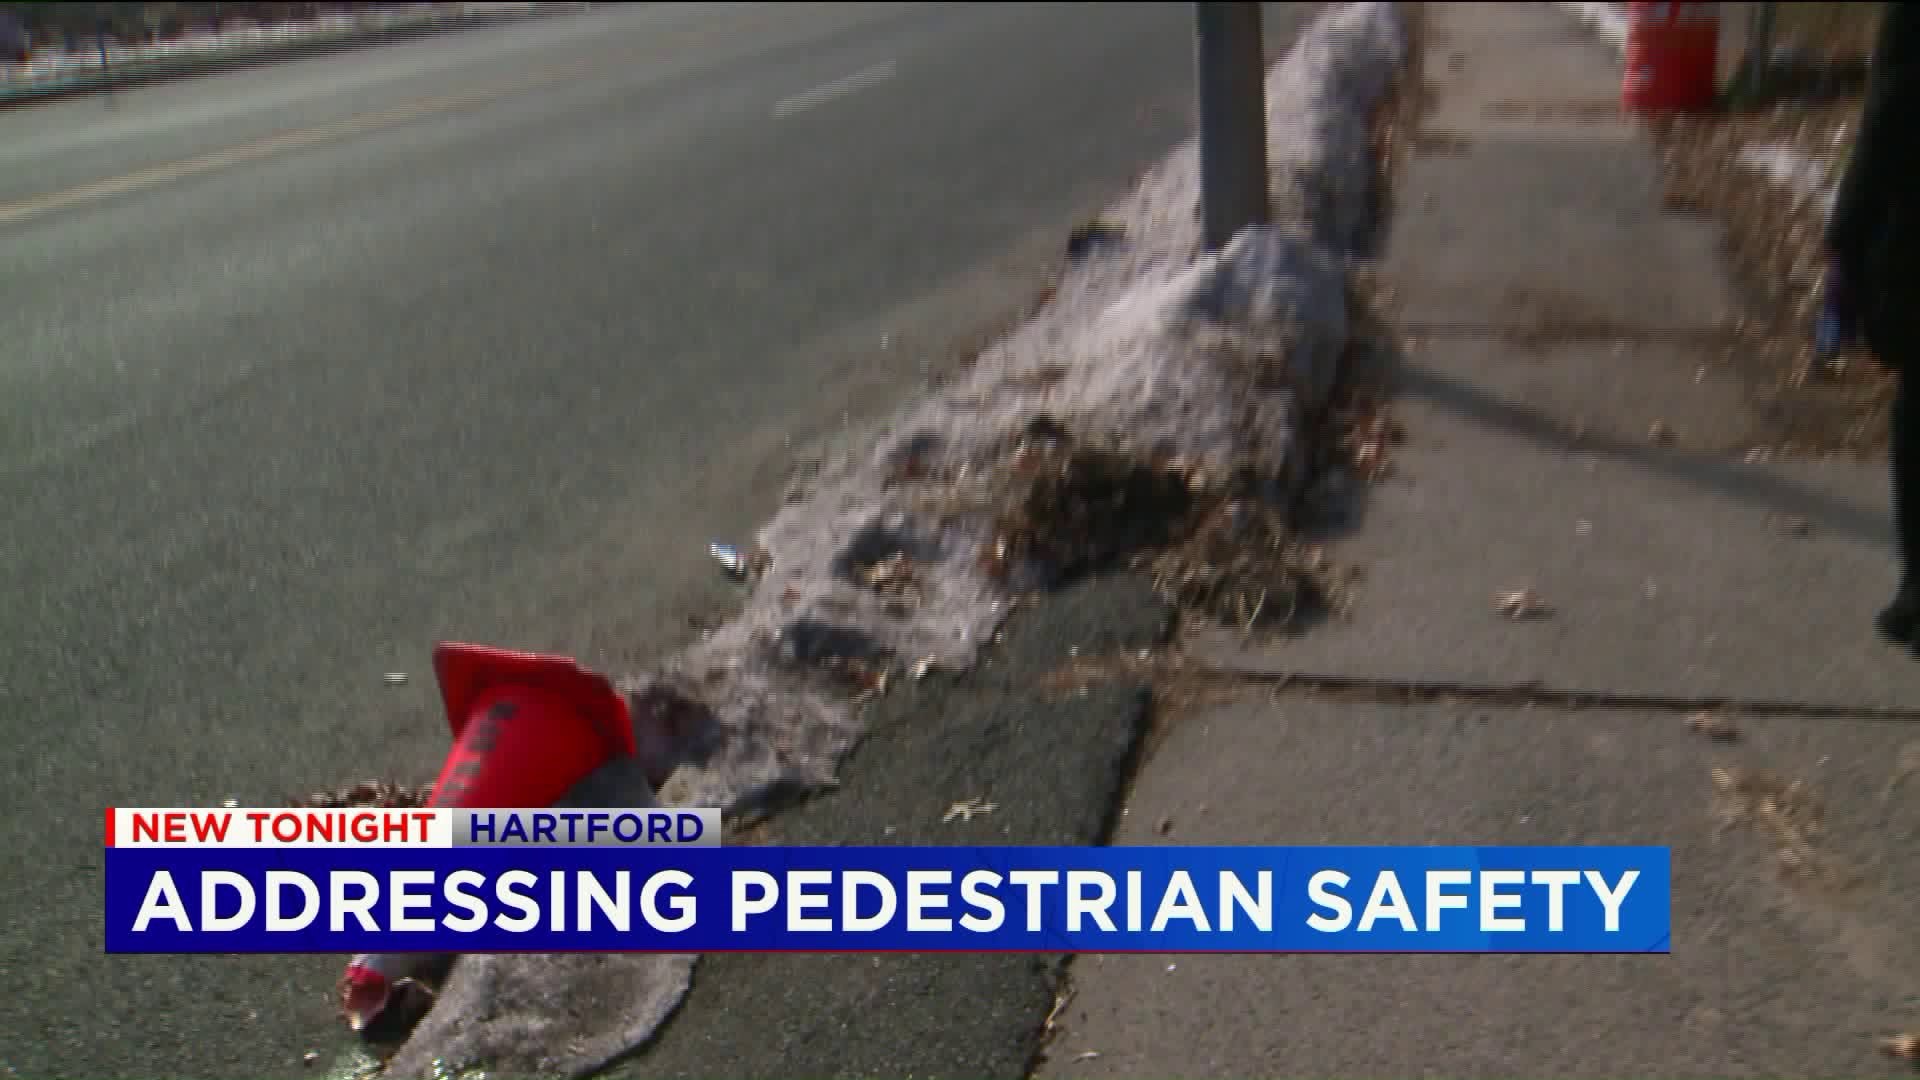 National grant helps community group make Hartford streets and sidewalks safer for pedestrians